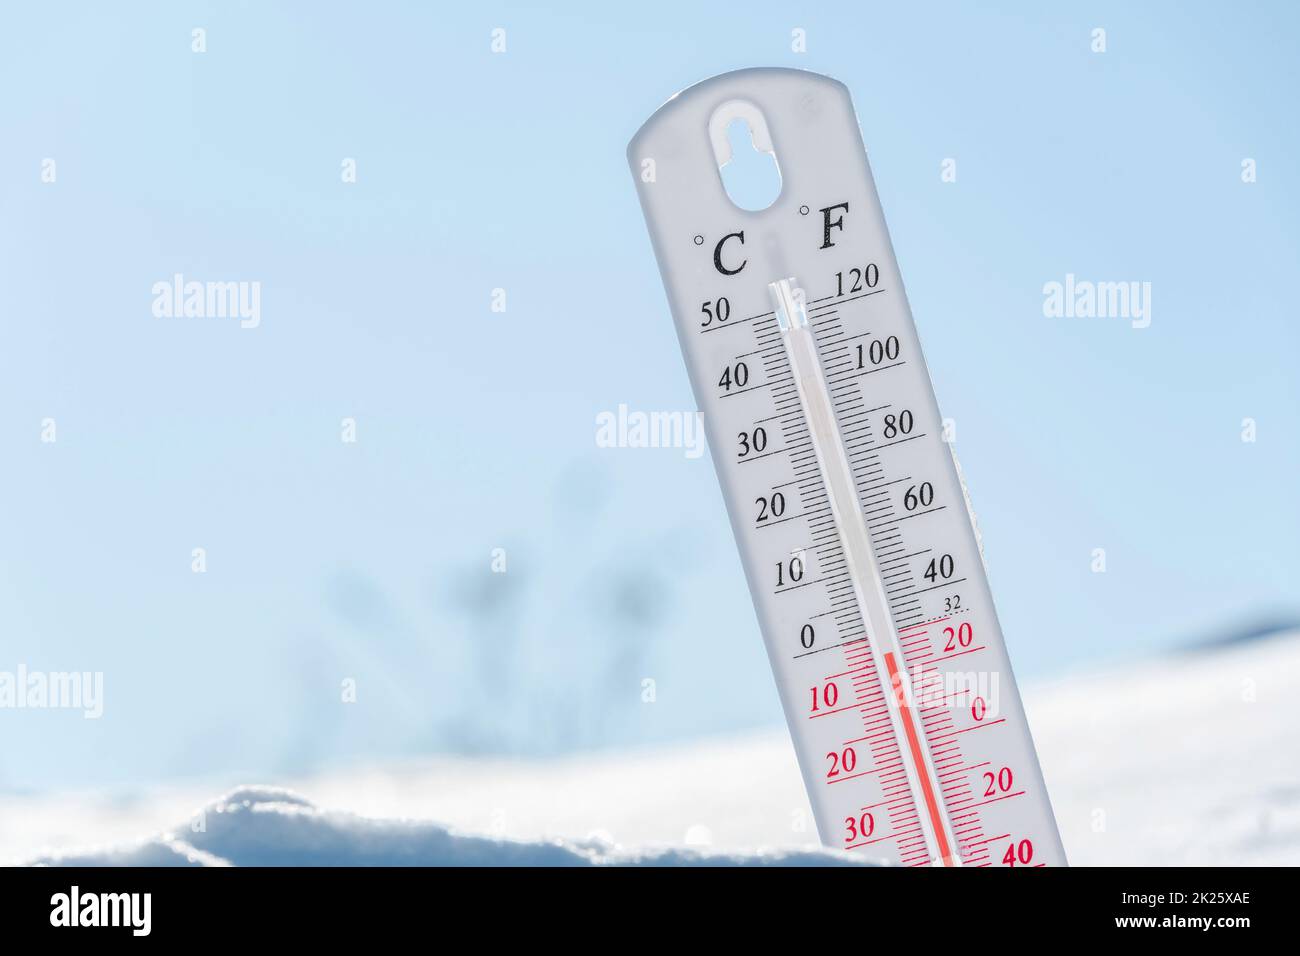 Das Thermometer liegt im Winter auf dem Schnee und zeigt eine niedrige negative Lufttemperatur an. Meteorologische Verhältnisse im rauen Klima in den nördlichen Regionen und in der Umwelt. Klimawandel auf der Erde Stockfoto